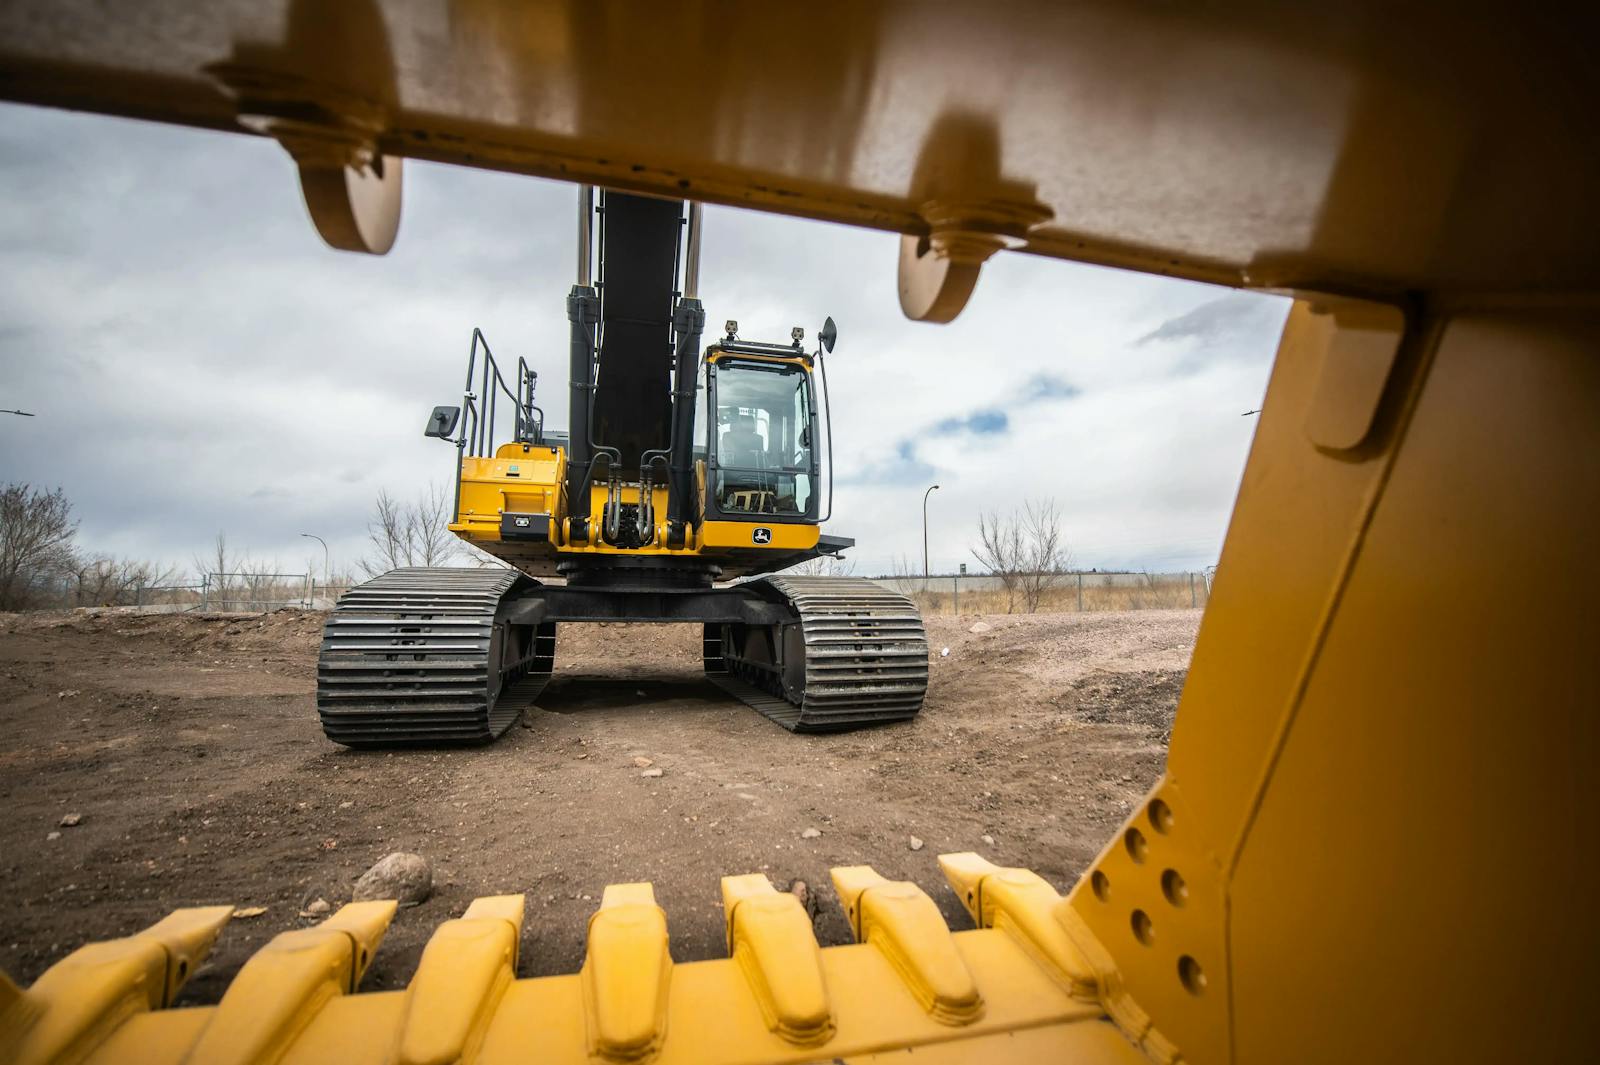 Digging Deeper: The Versatility and Power of John Deere Compact Excavators